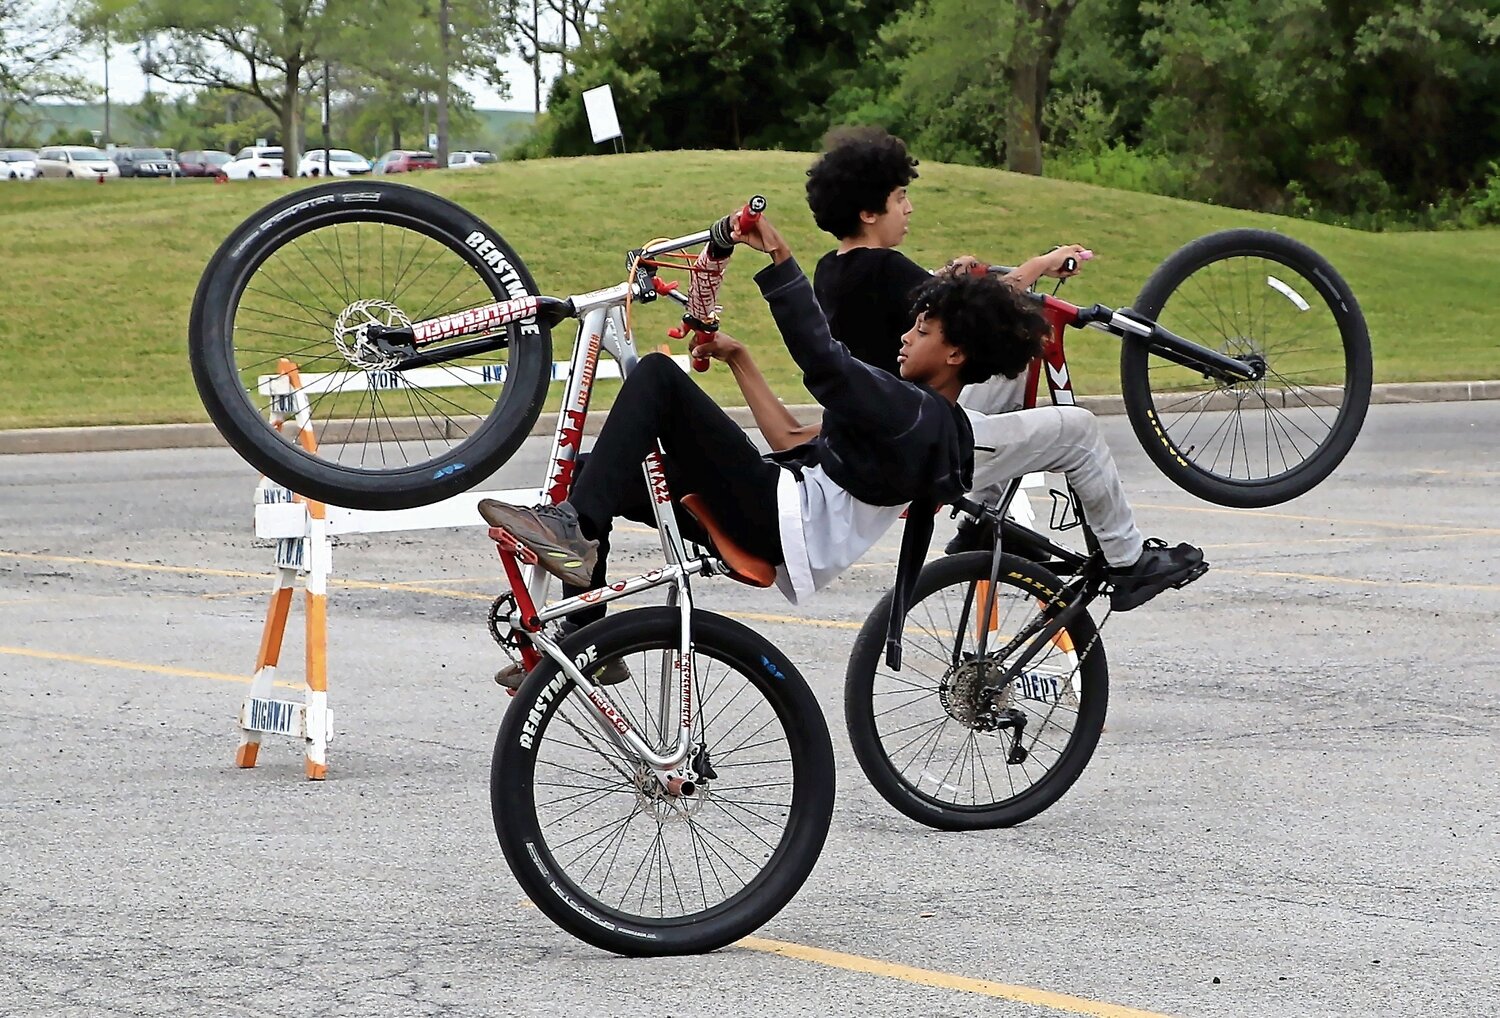 Matthew Romero, 16, and Eli Willis, 13, shows off some of their tricks while riding their bikes.